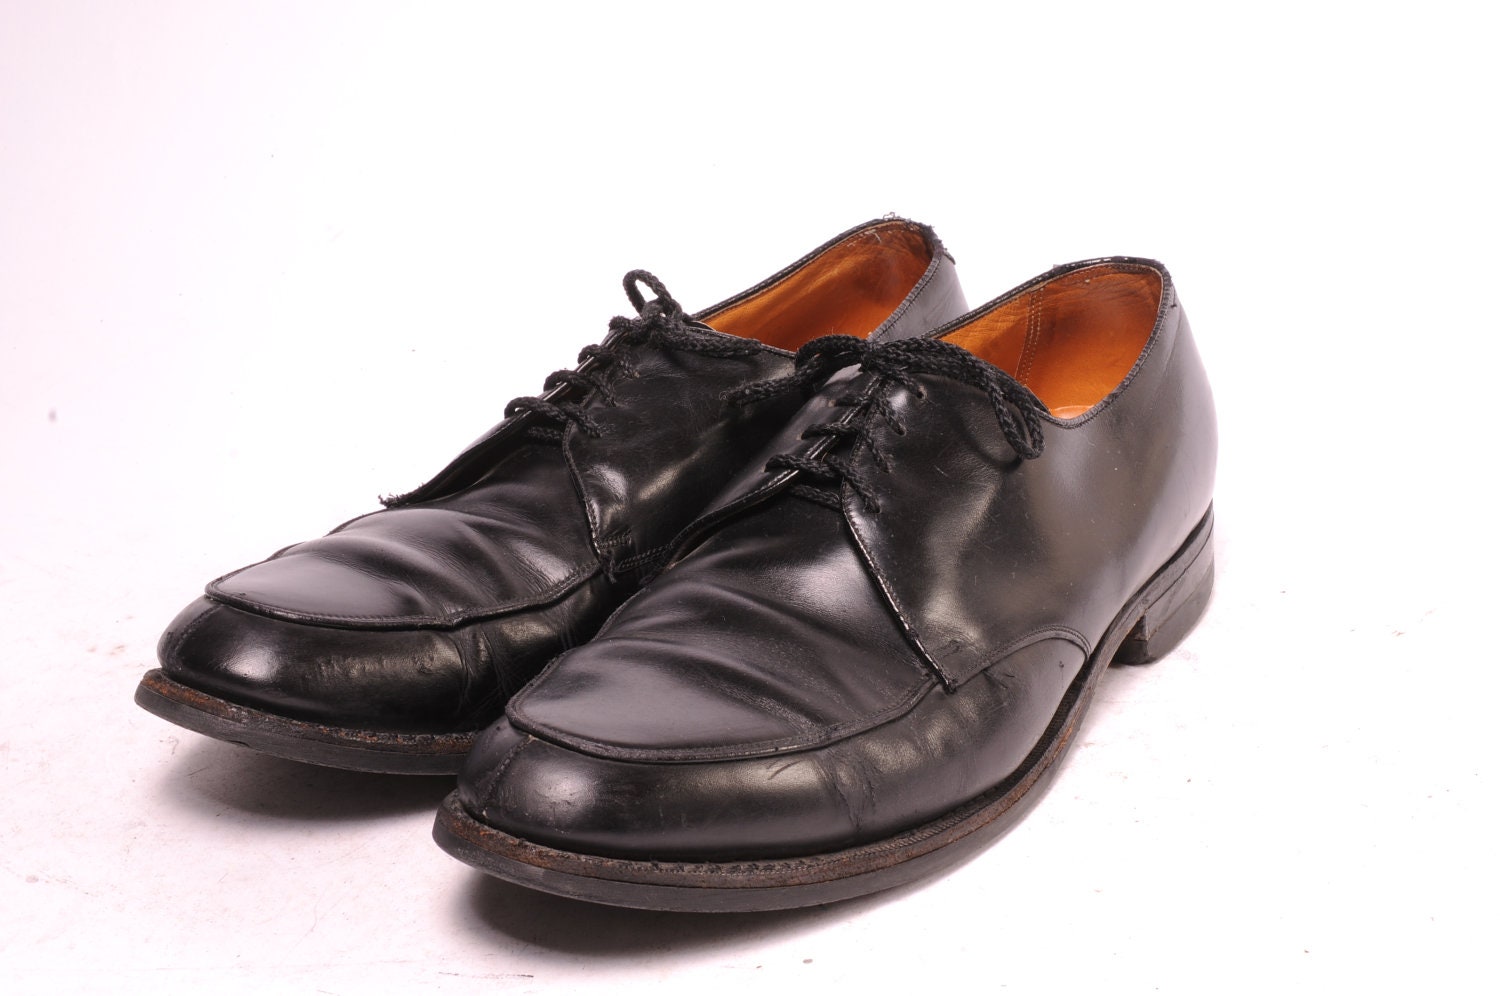 1960s Mens Shoes Size 11D by Florsheim